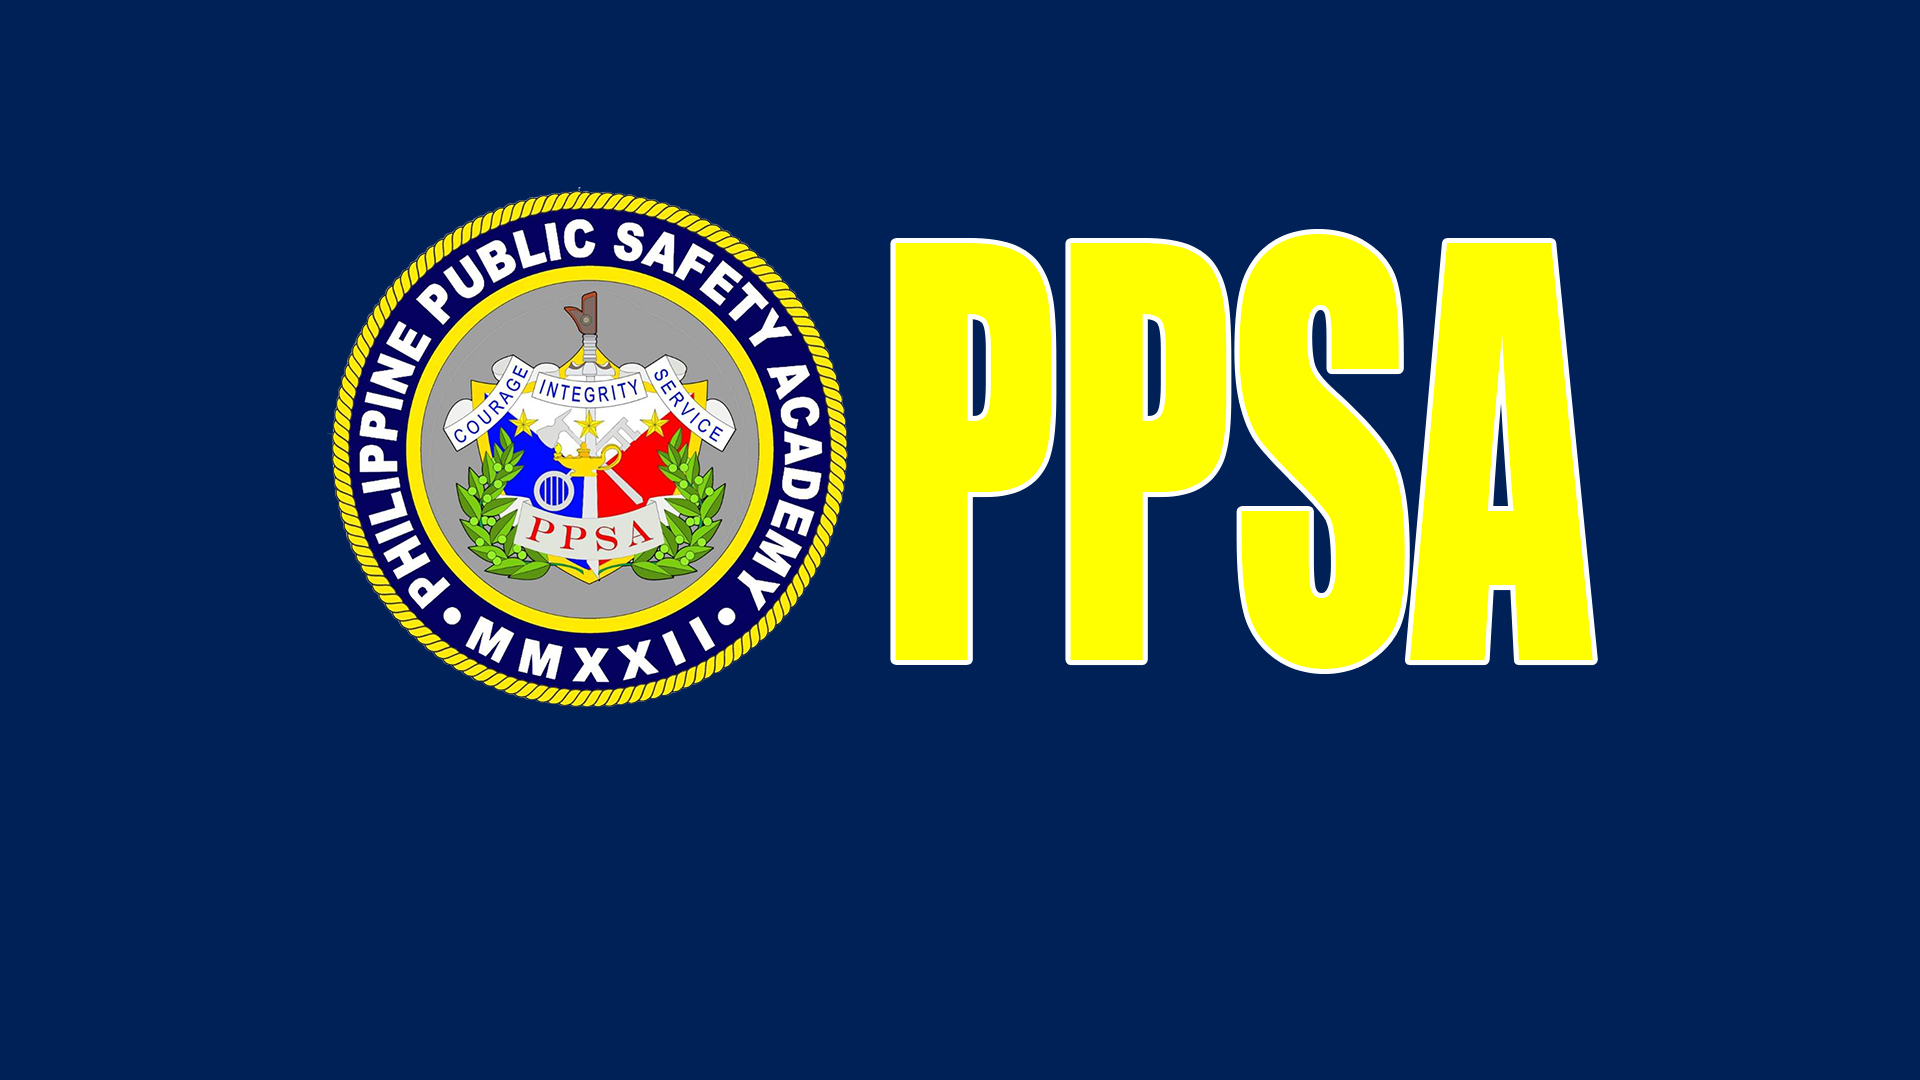 PPSA Press Release